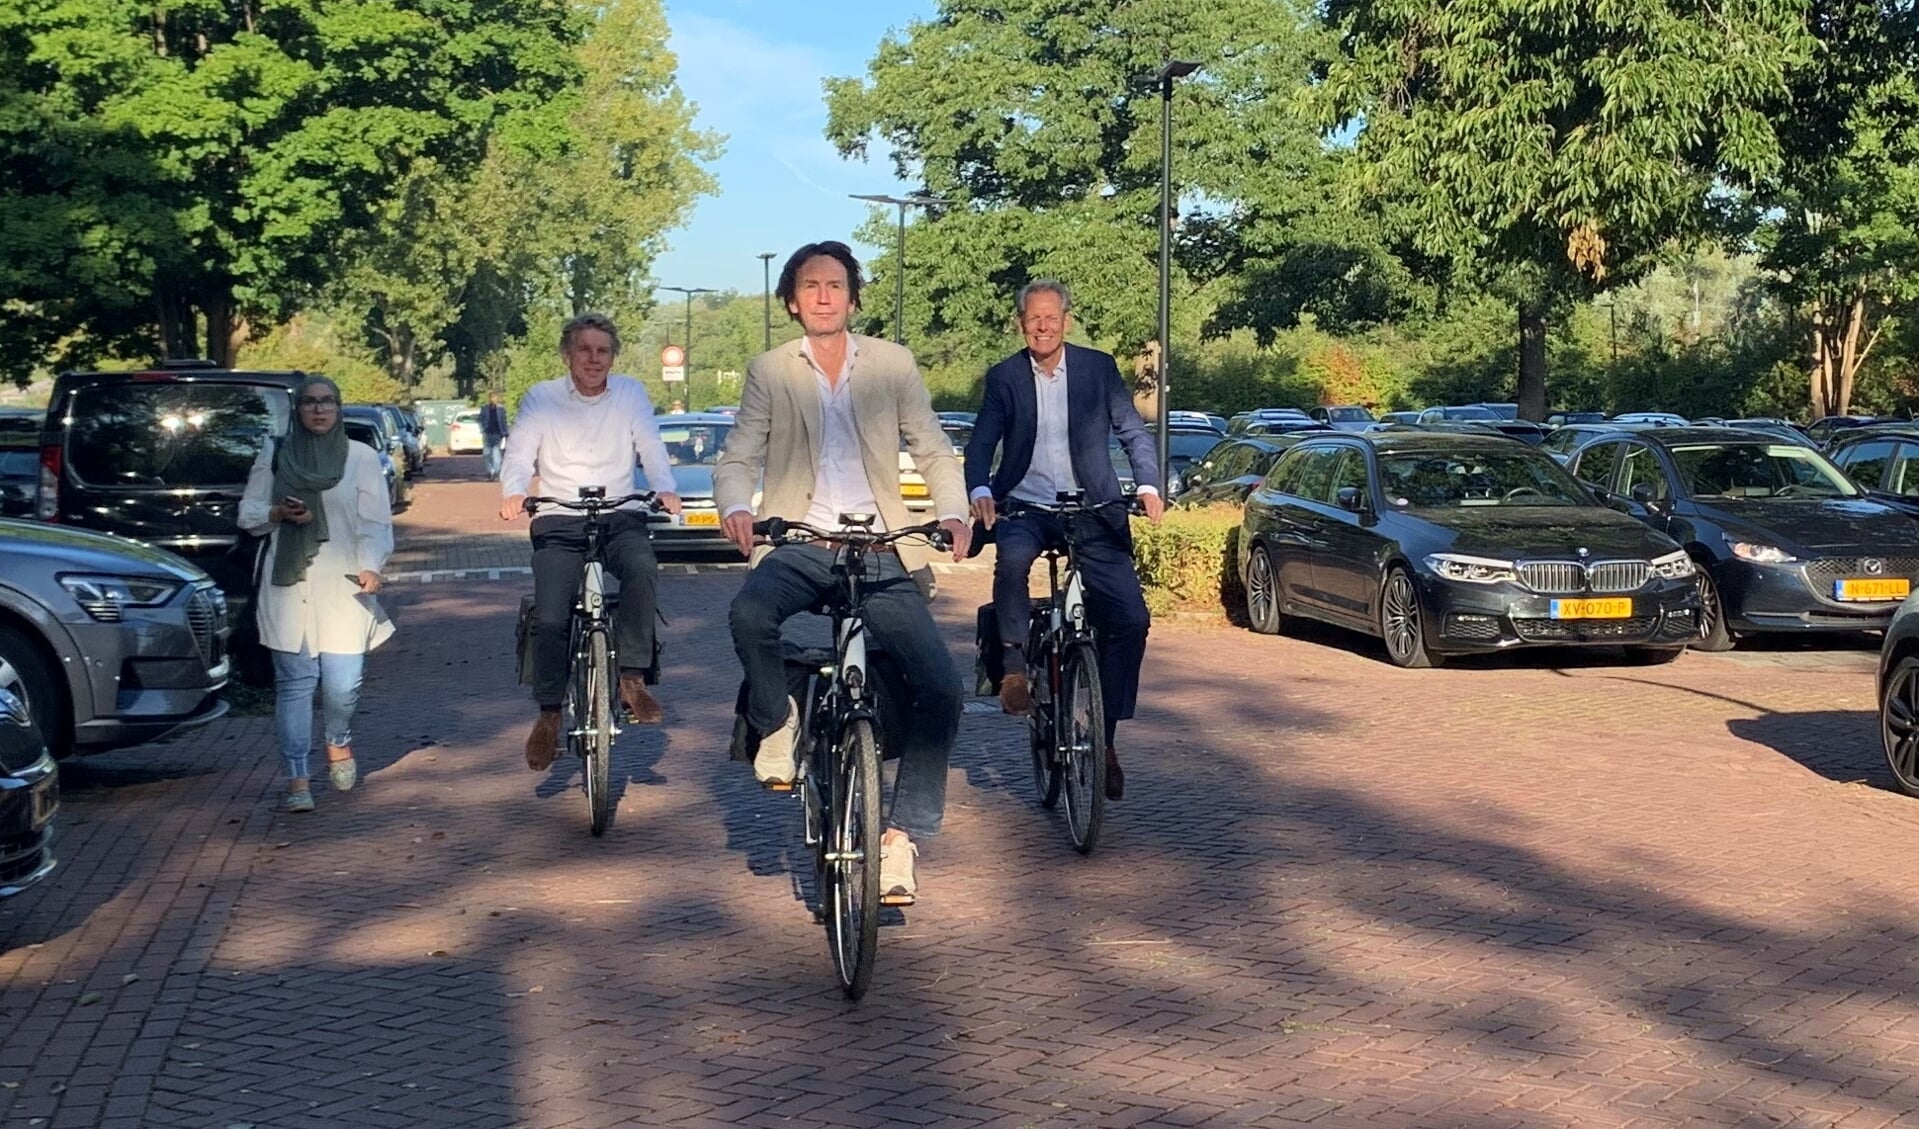 Marco Polo lawaai salaris Gemeente neemt elektrische fietsen in gebruik voor ritten in Amstelveen -  amstelveensnieuwsblad.nl Nieuws uit de regio Amstelveen